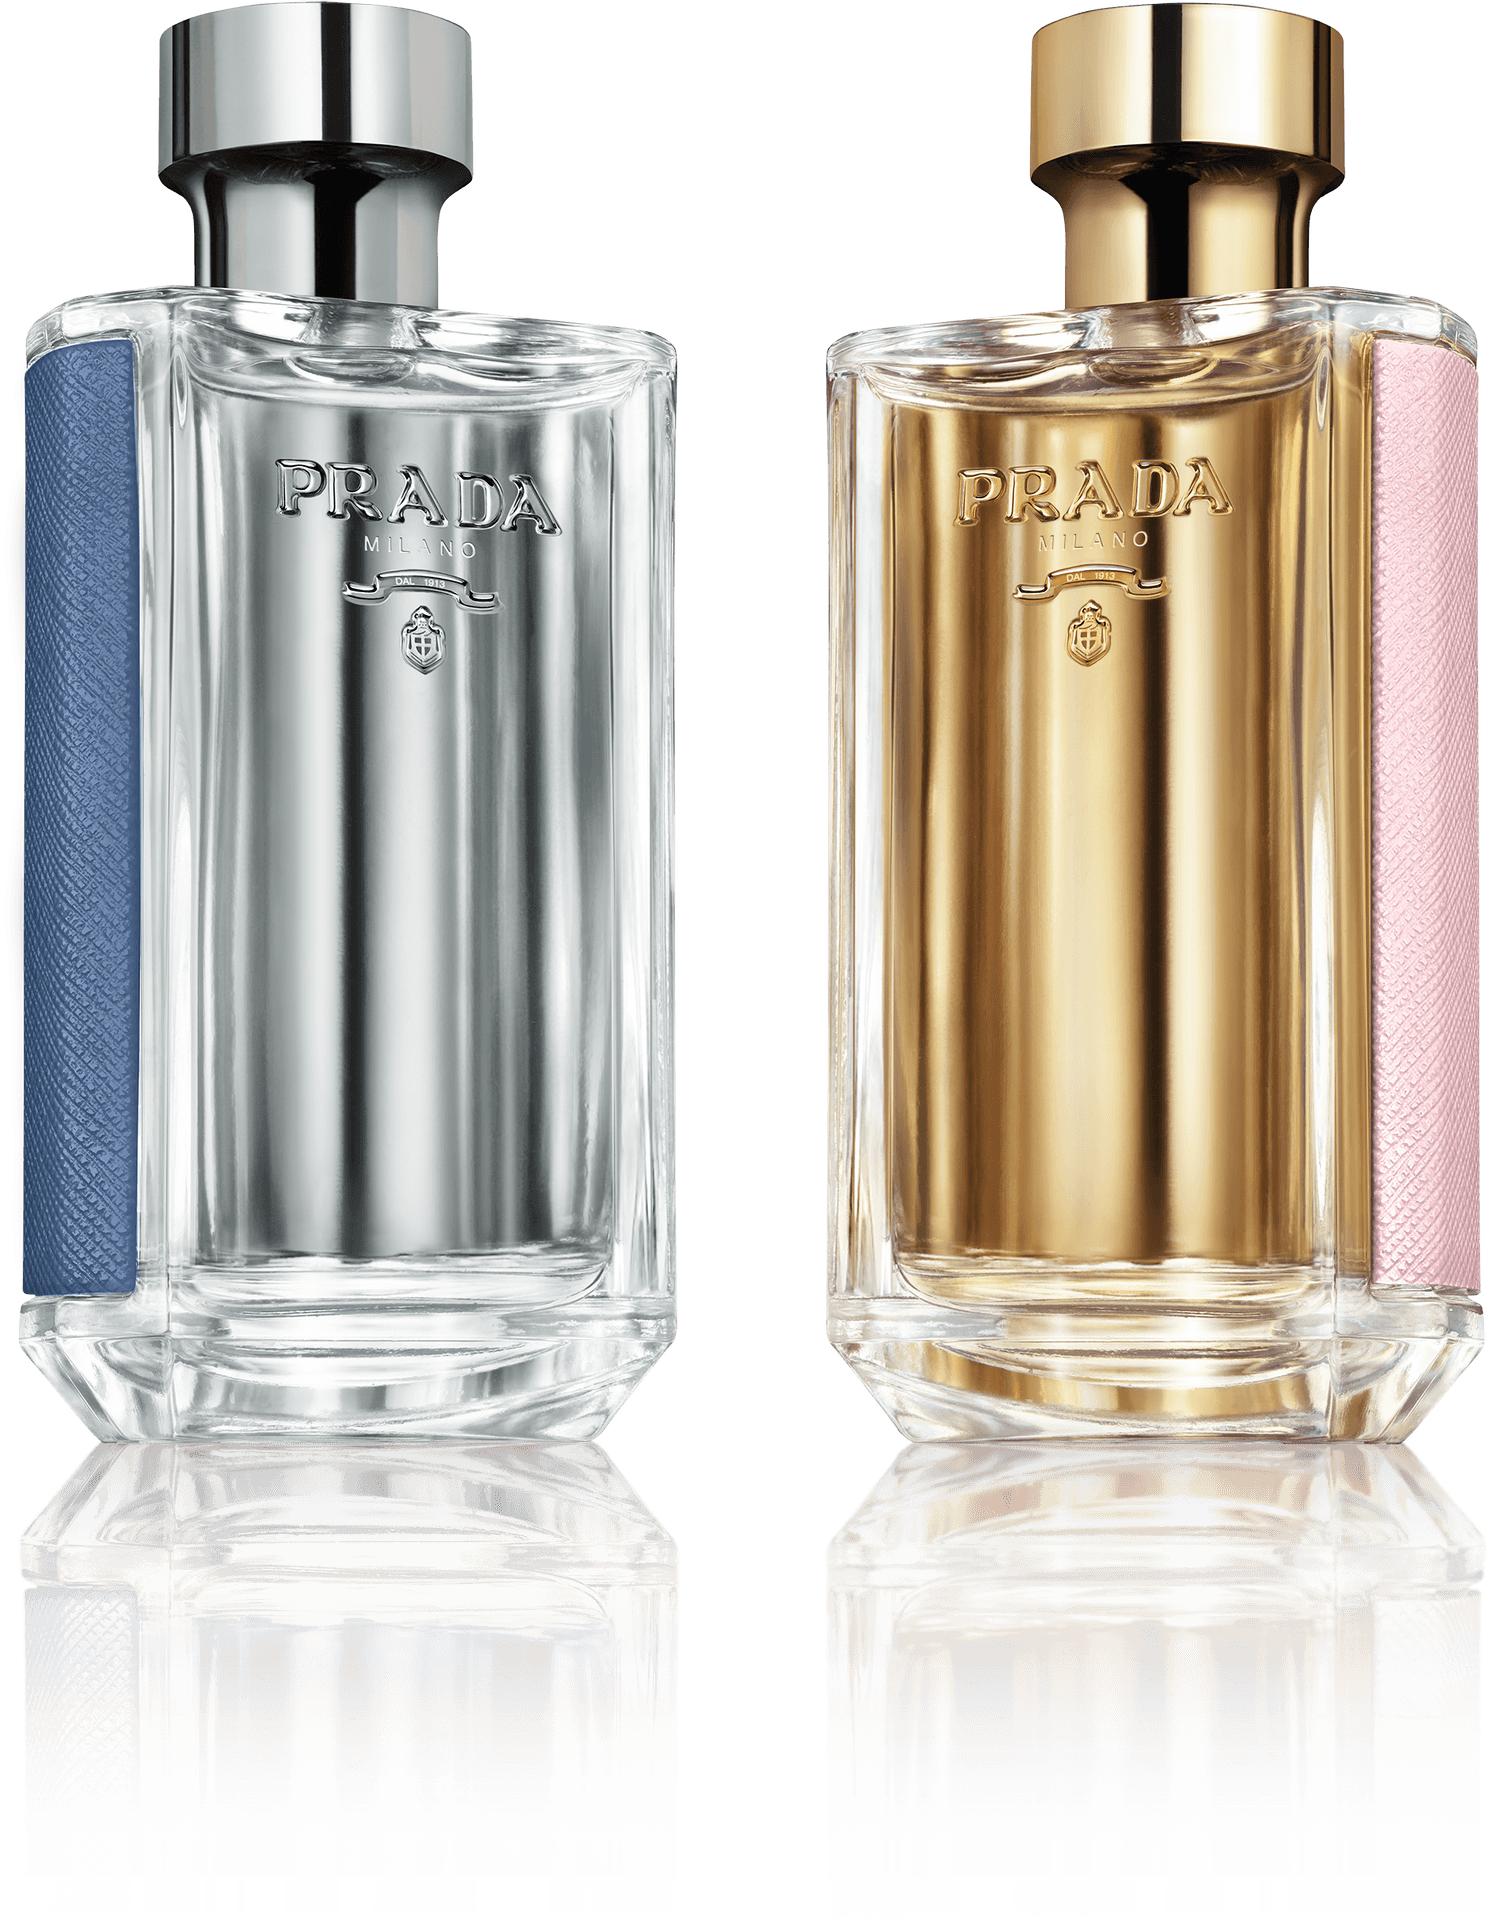 Prada Perfume Bottles Silverand Gold PNG image